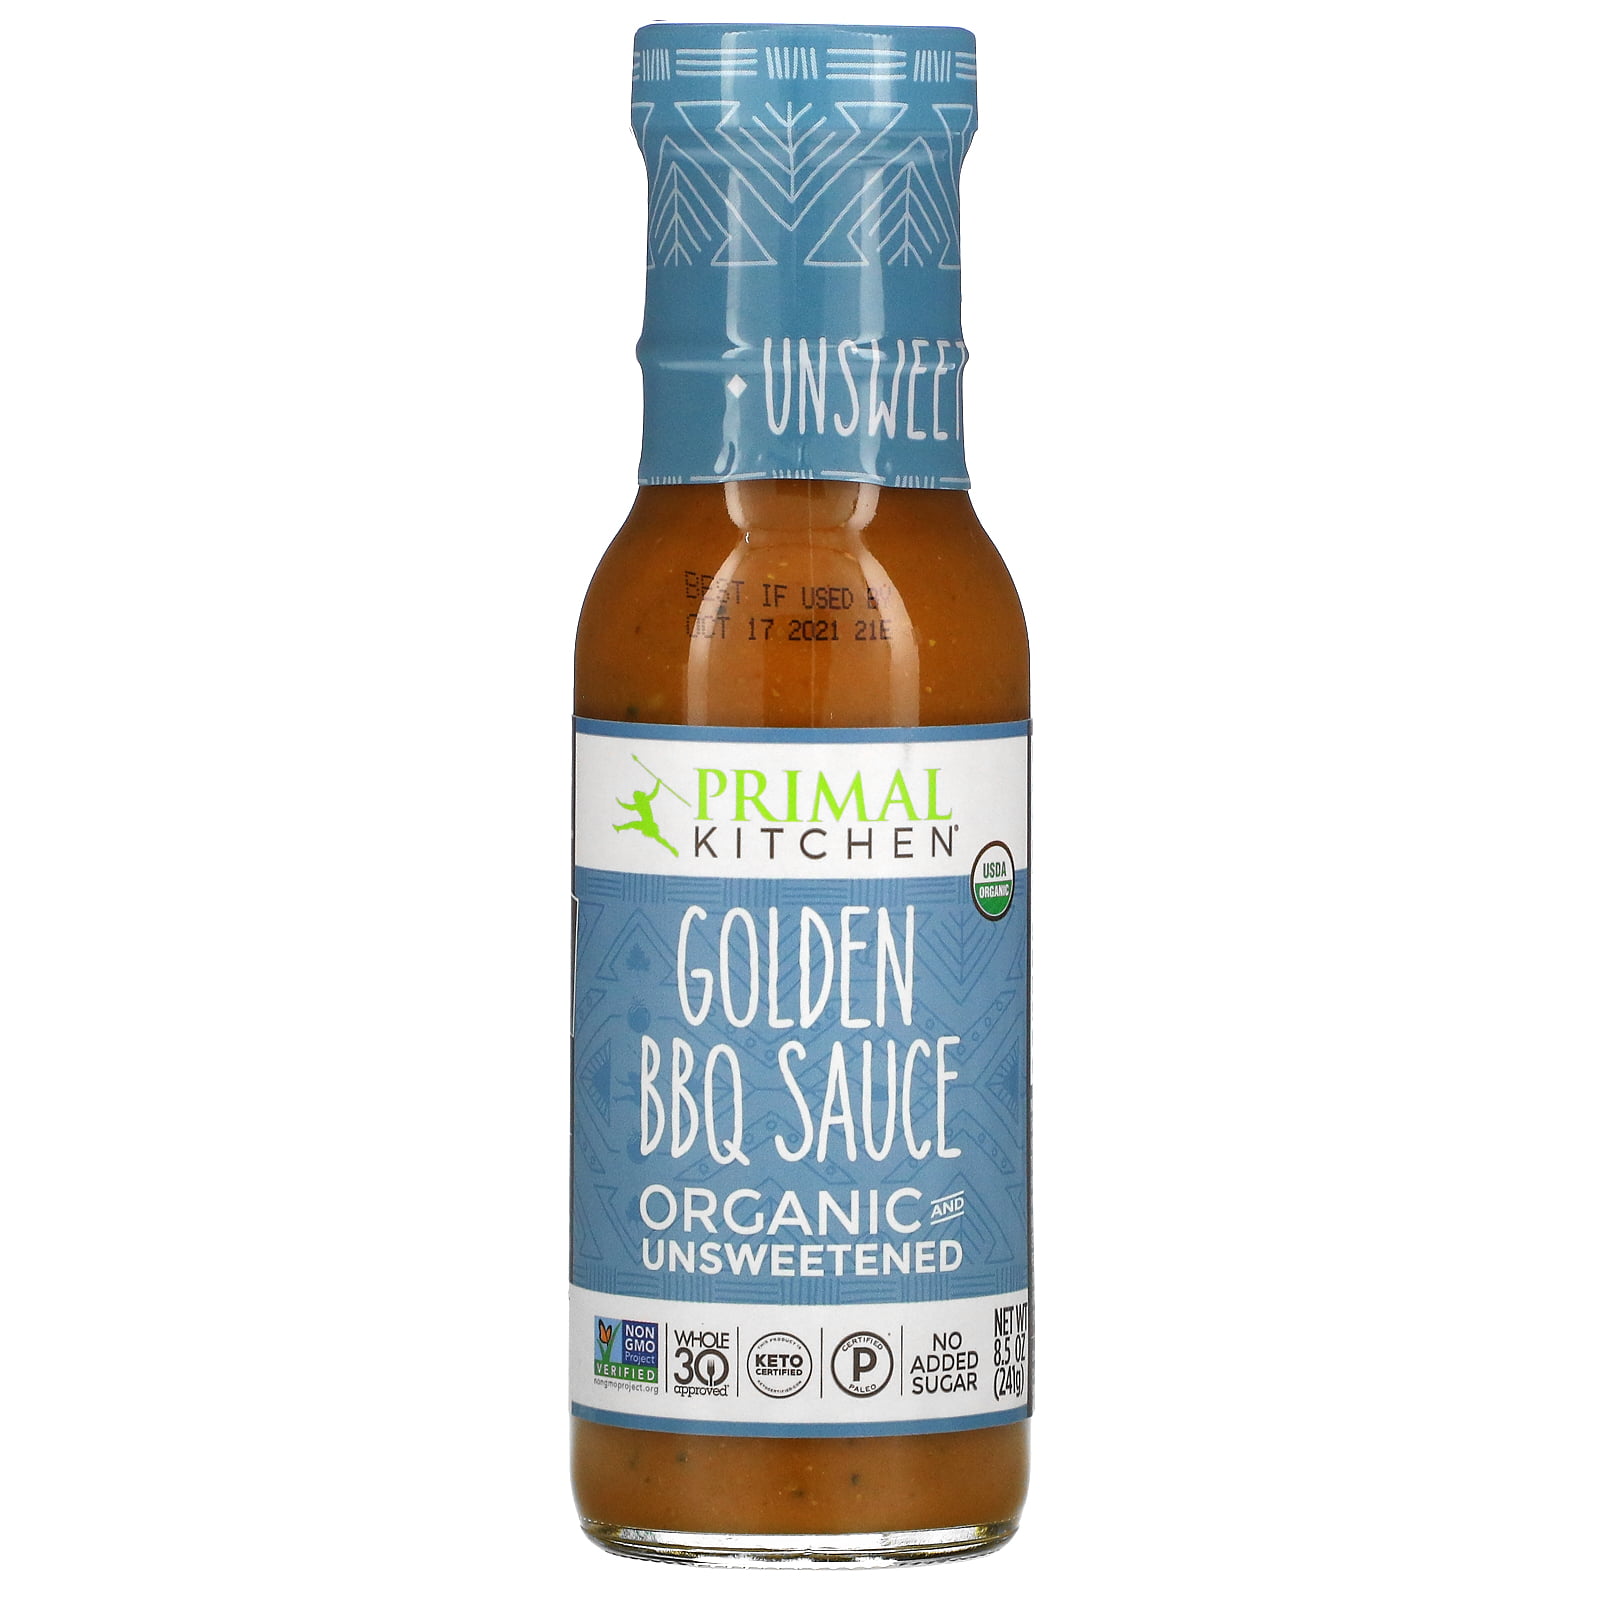  Primal Kitchen's Golden BBQ Sauce, Organic